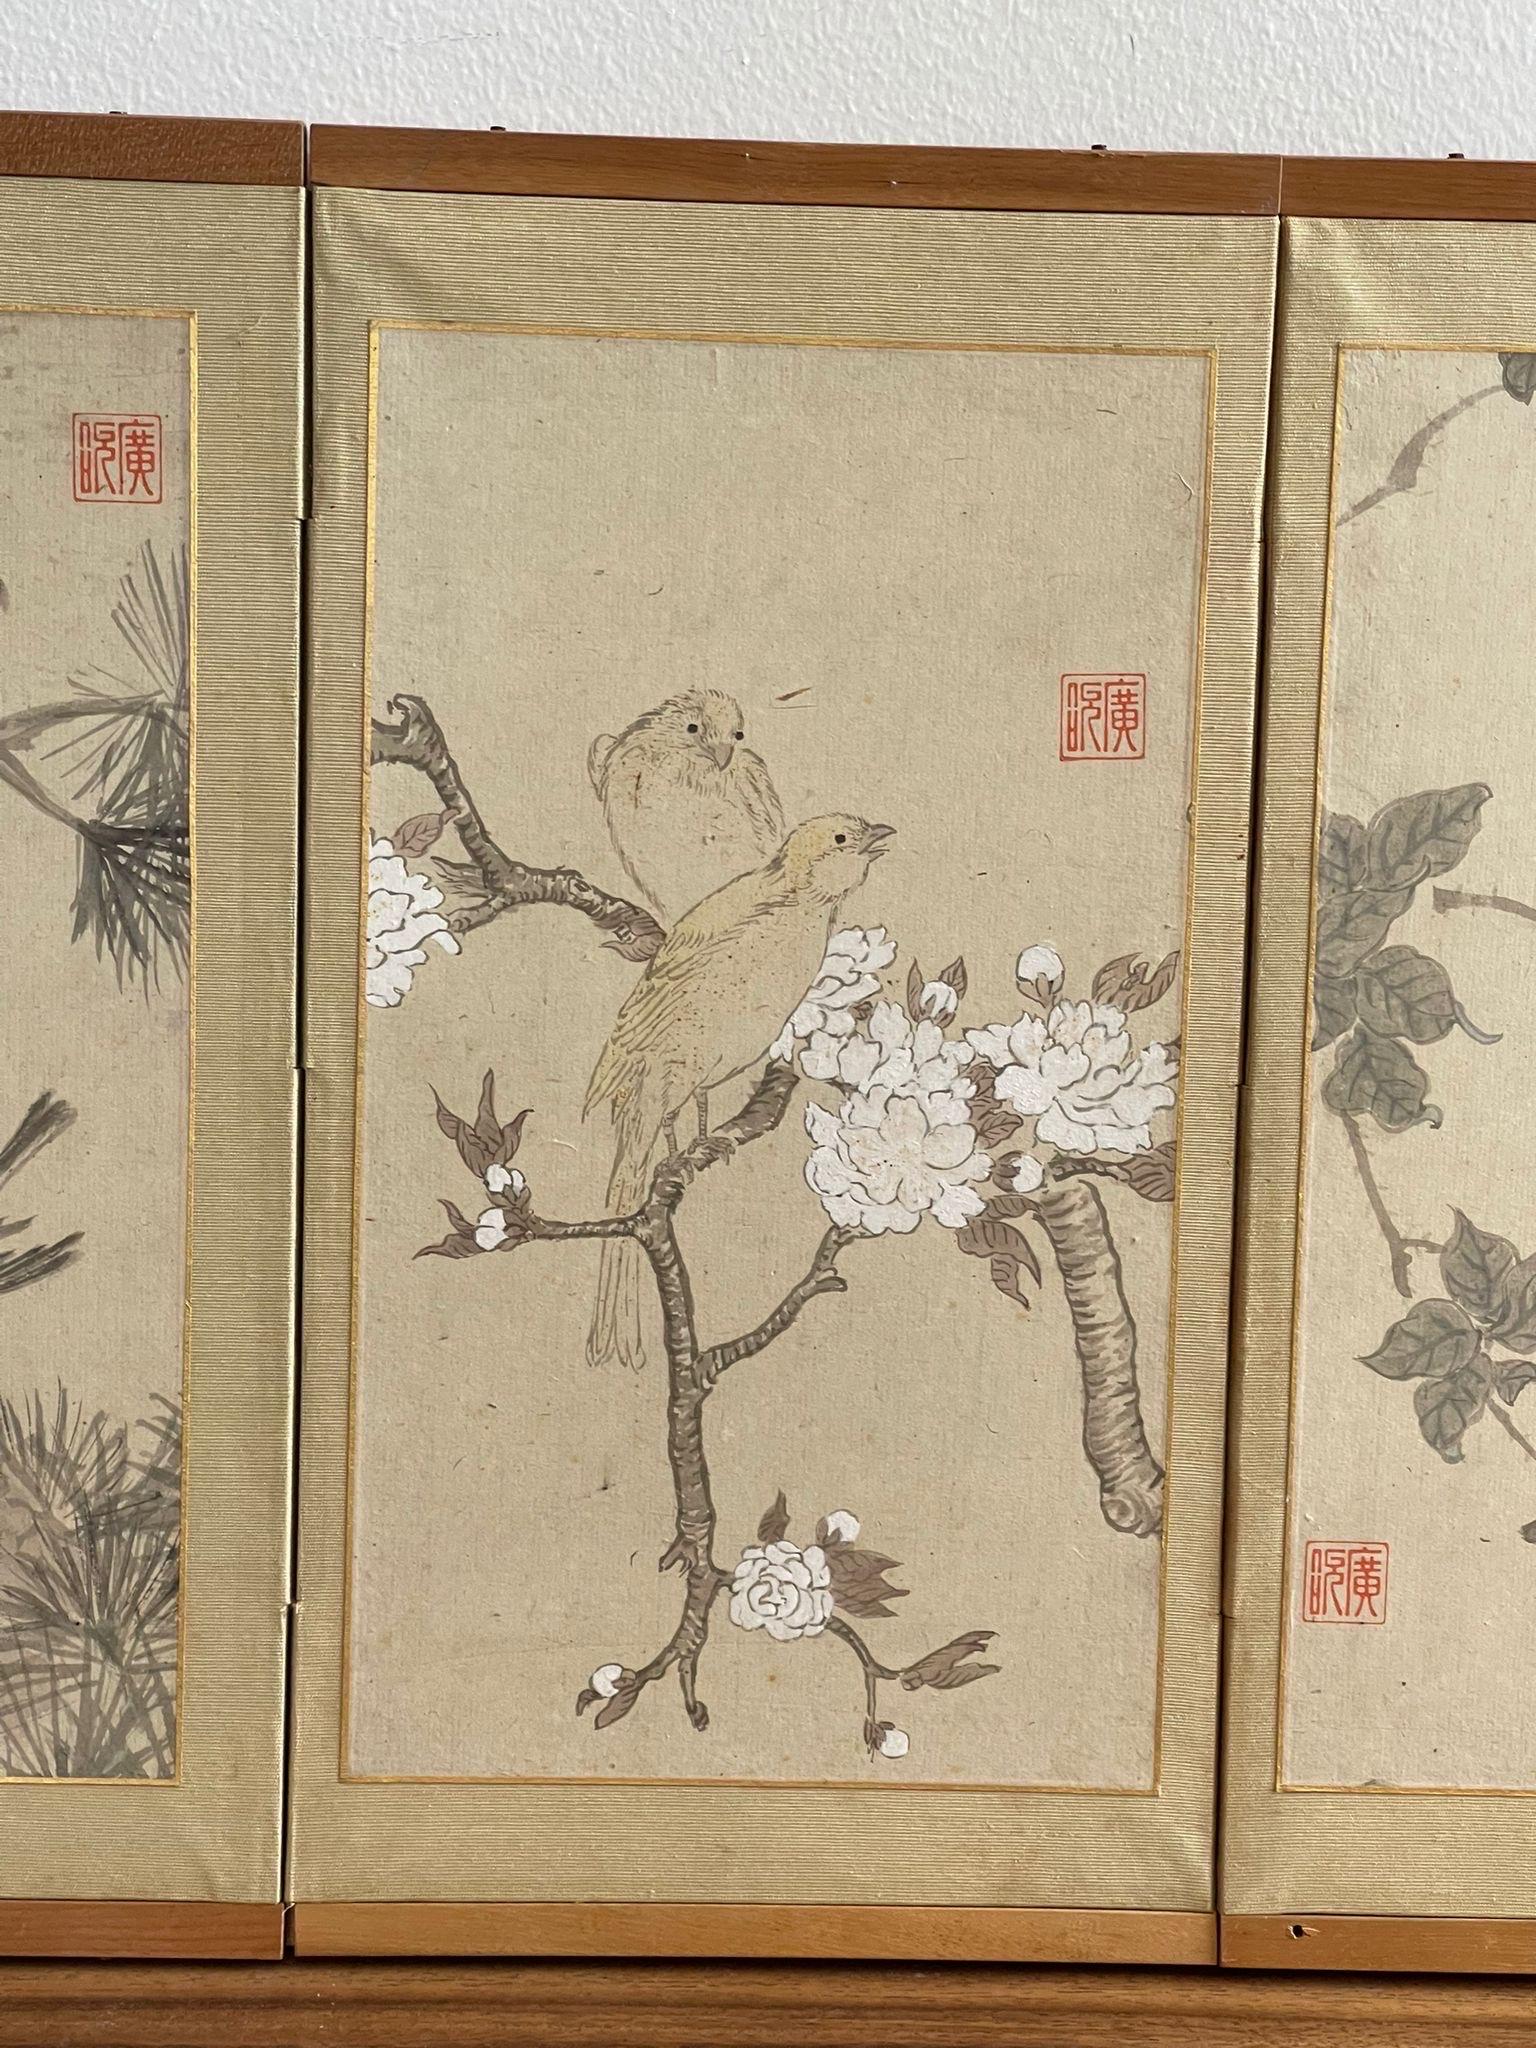 Bois Vieille peinture japonaise à 6 panneaux, encadrée et signée, dans un cadre en bois.